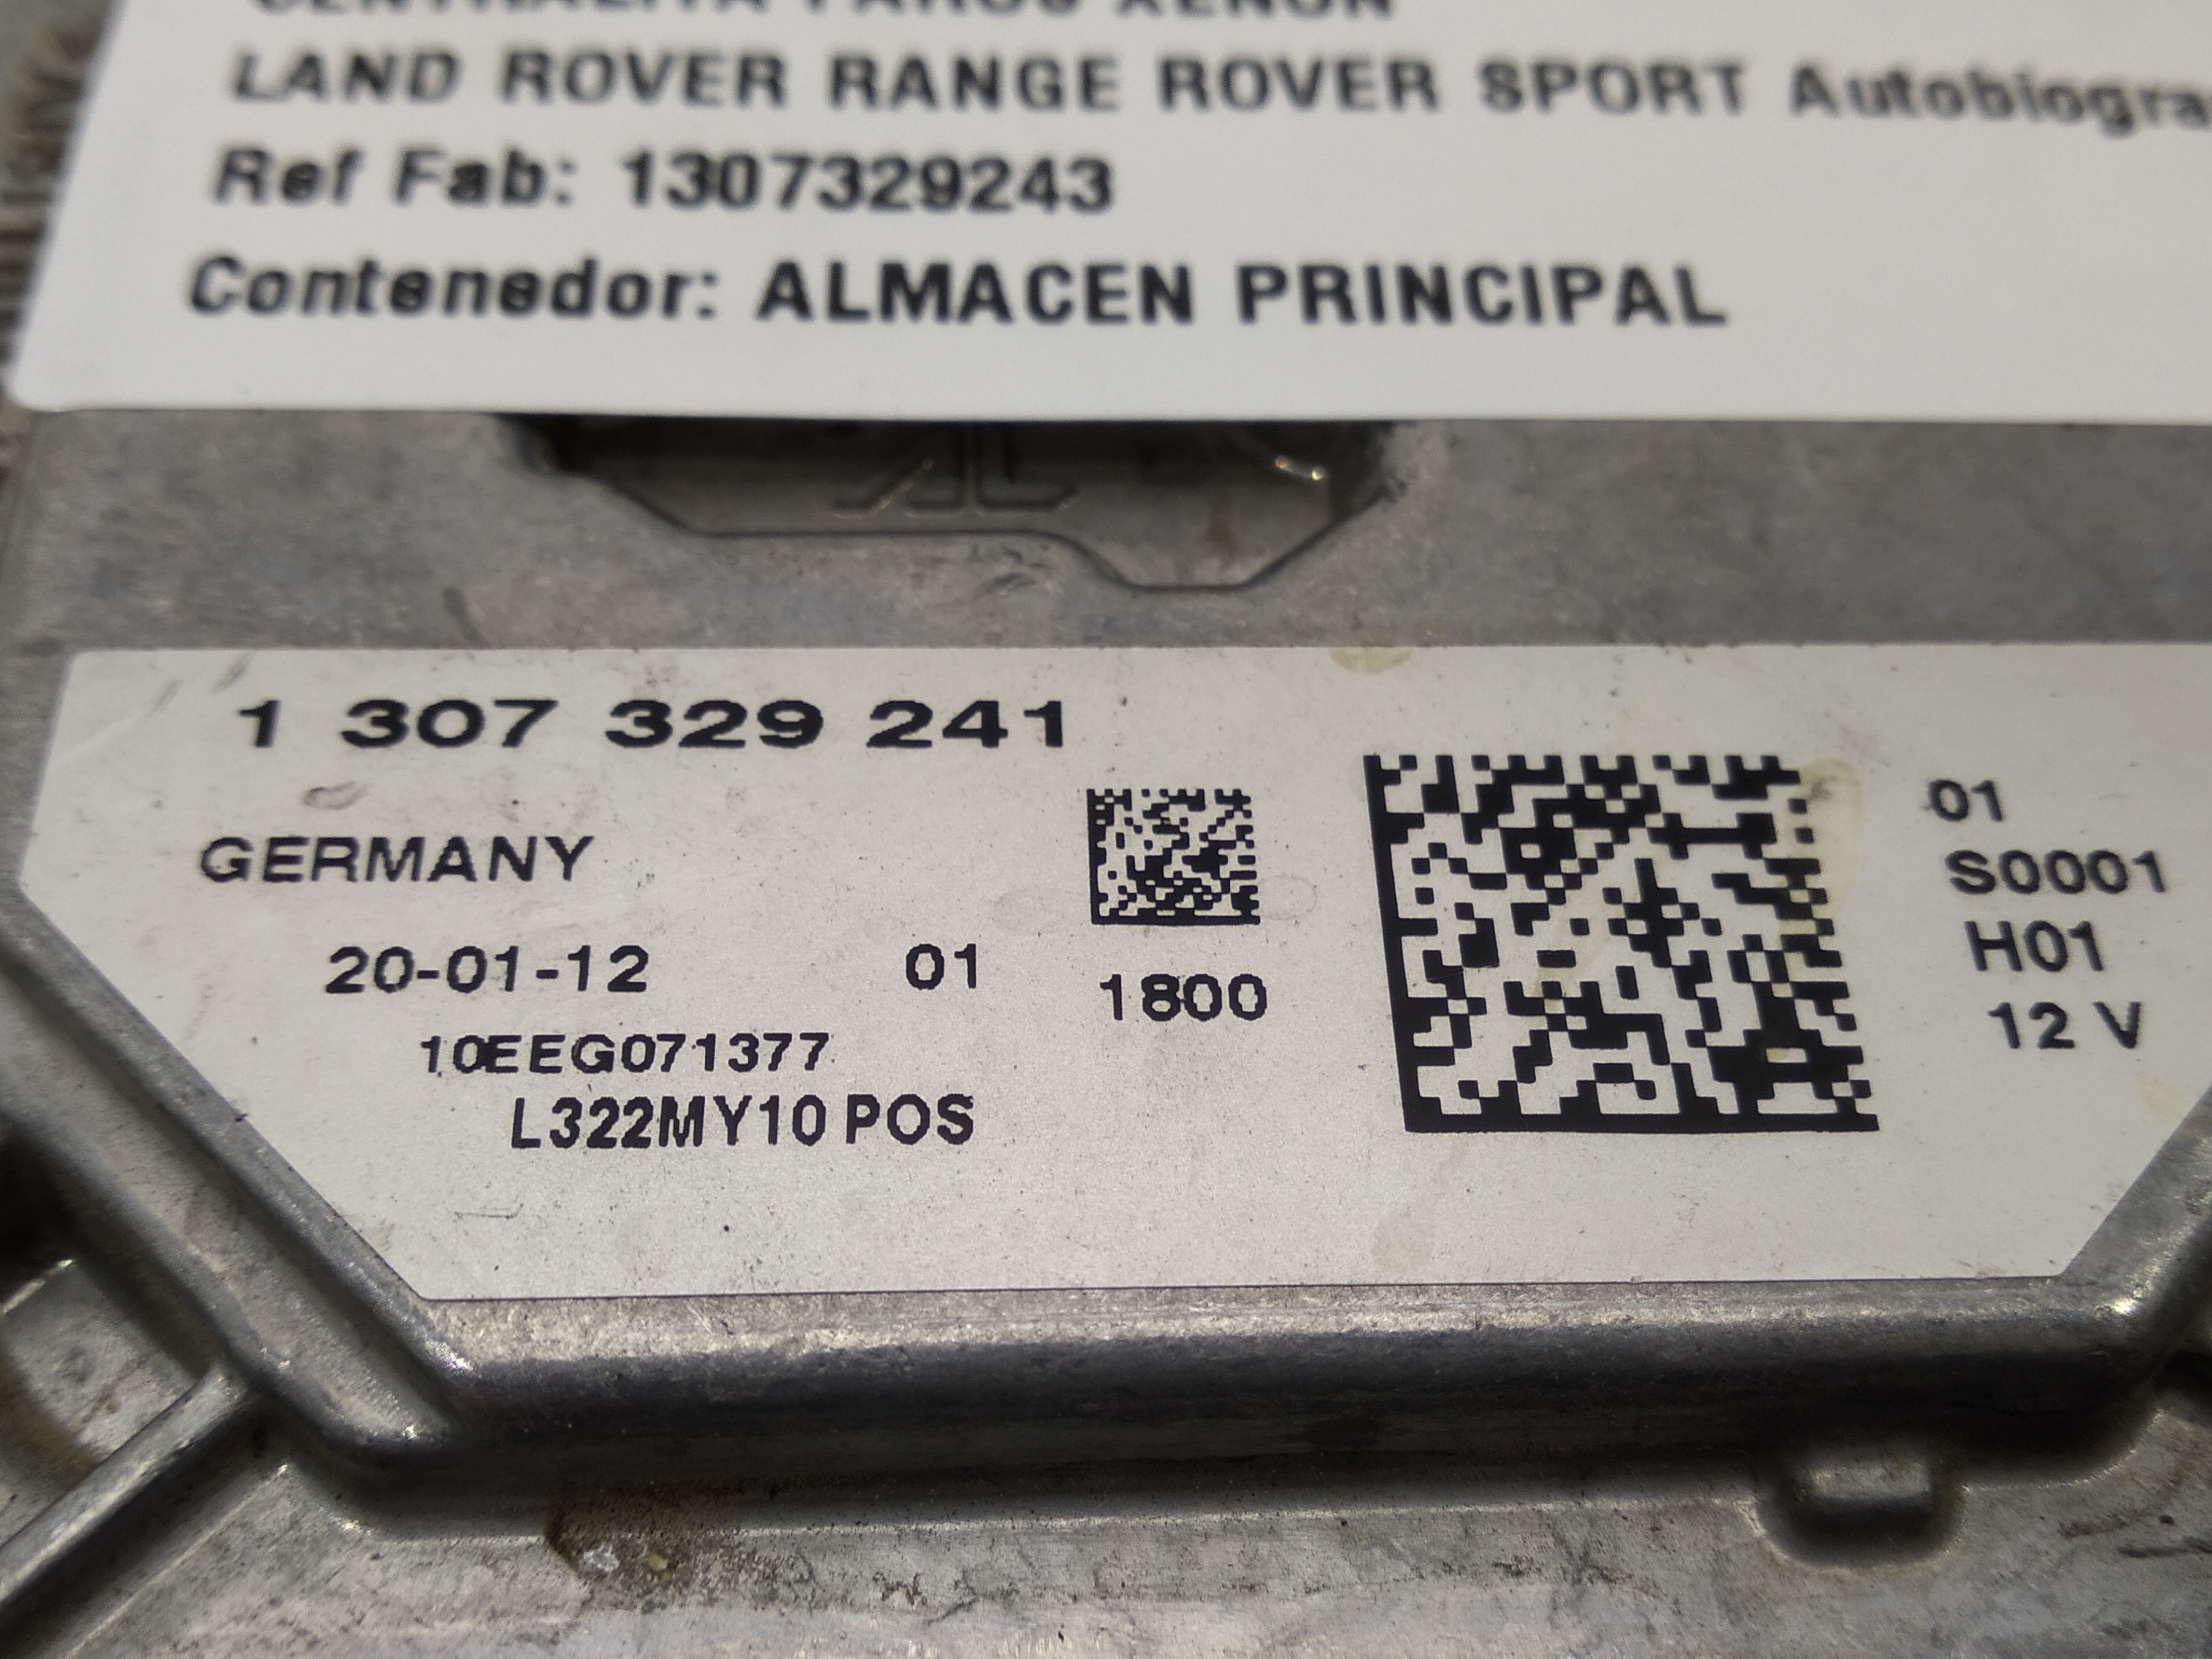 LAND ROVER Range Rover Evoque L538 (1 gen) (2011-2020) Xenonljuskontrollenhet 1307329243, 1307329243 19339743